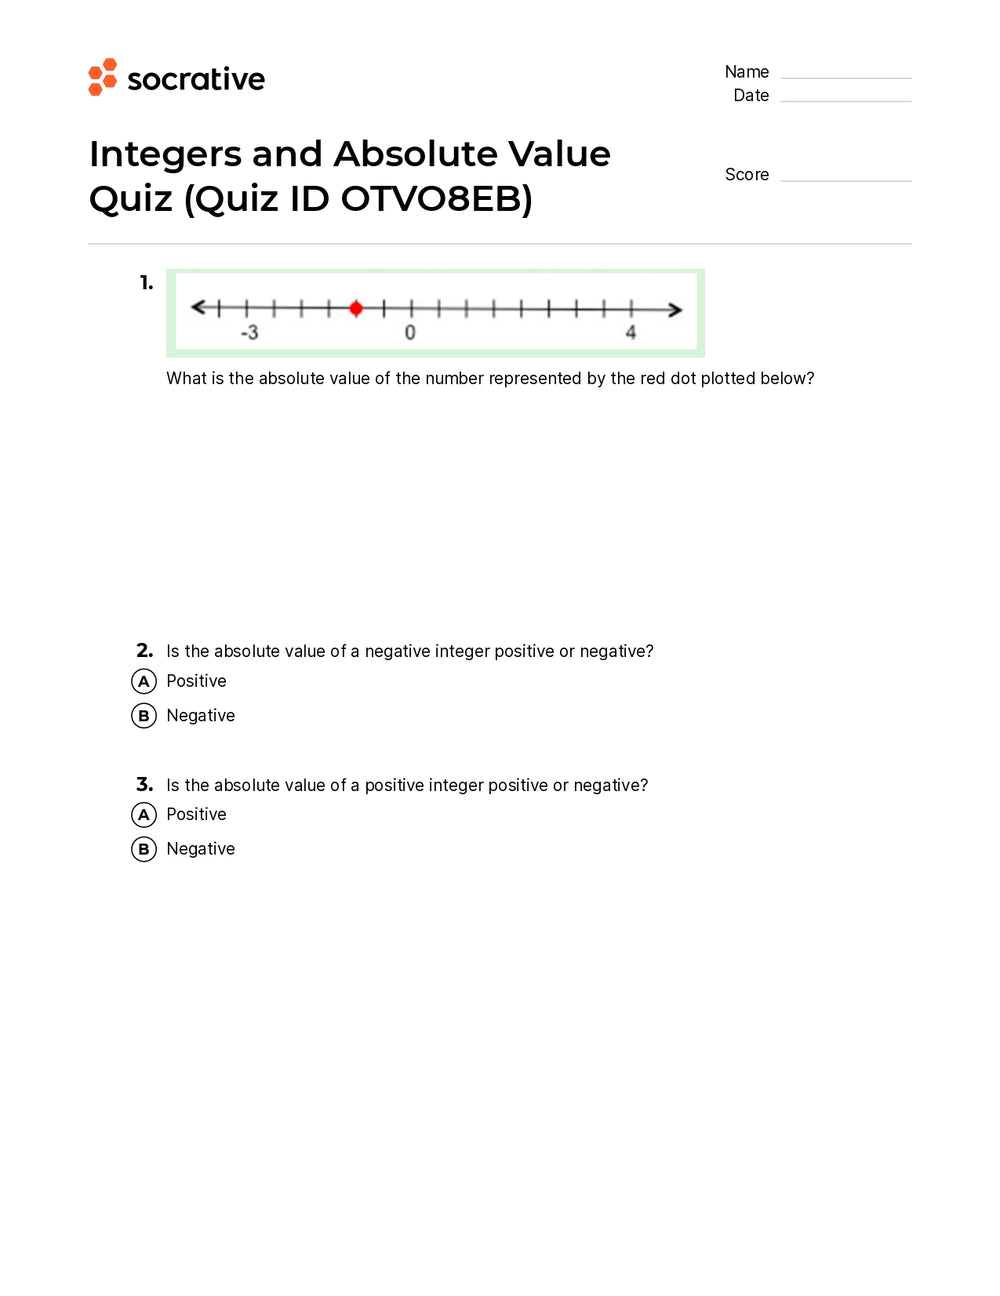 Quiz - Resultado - 0 até 3 perguntas - SBD